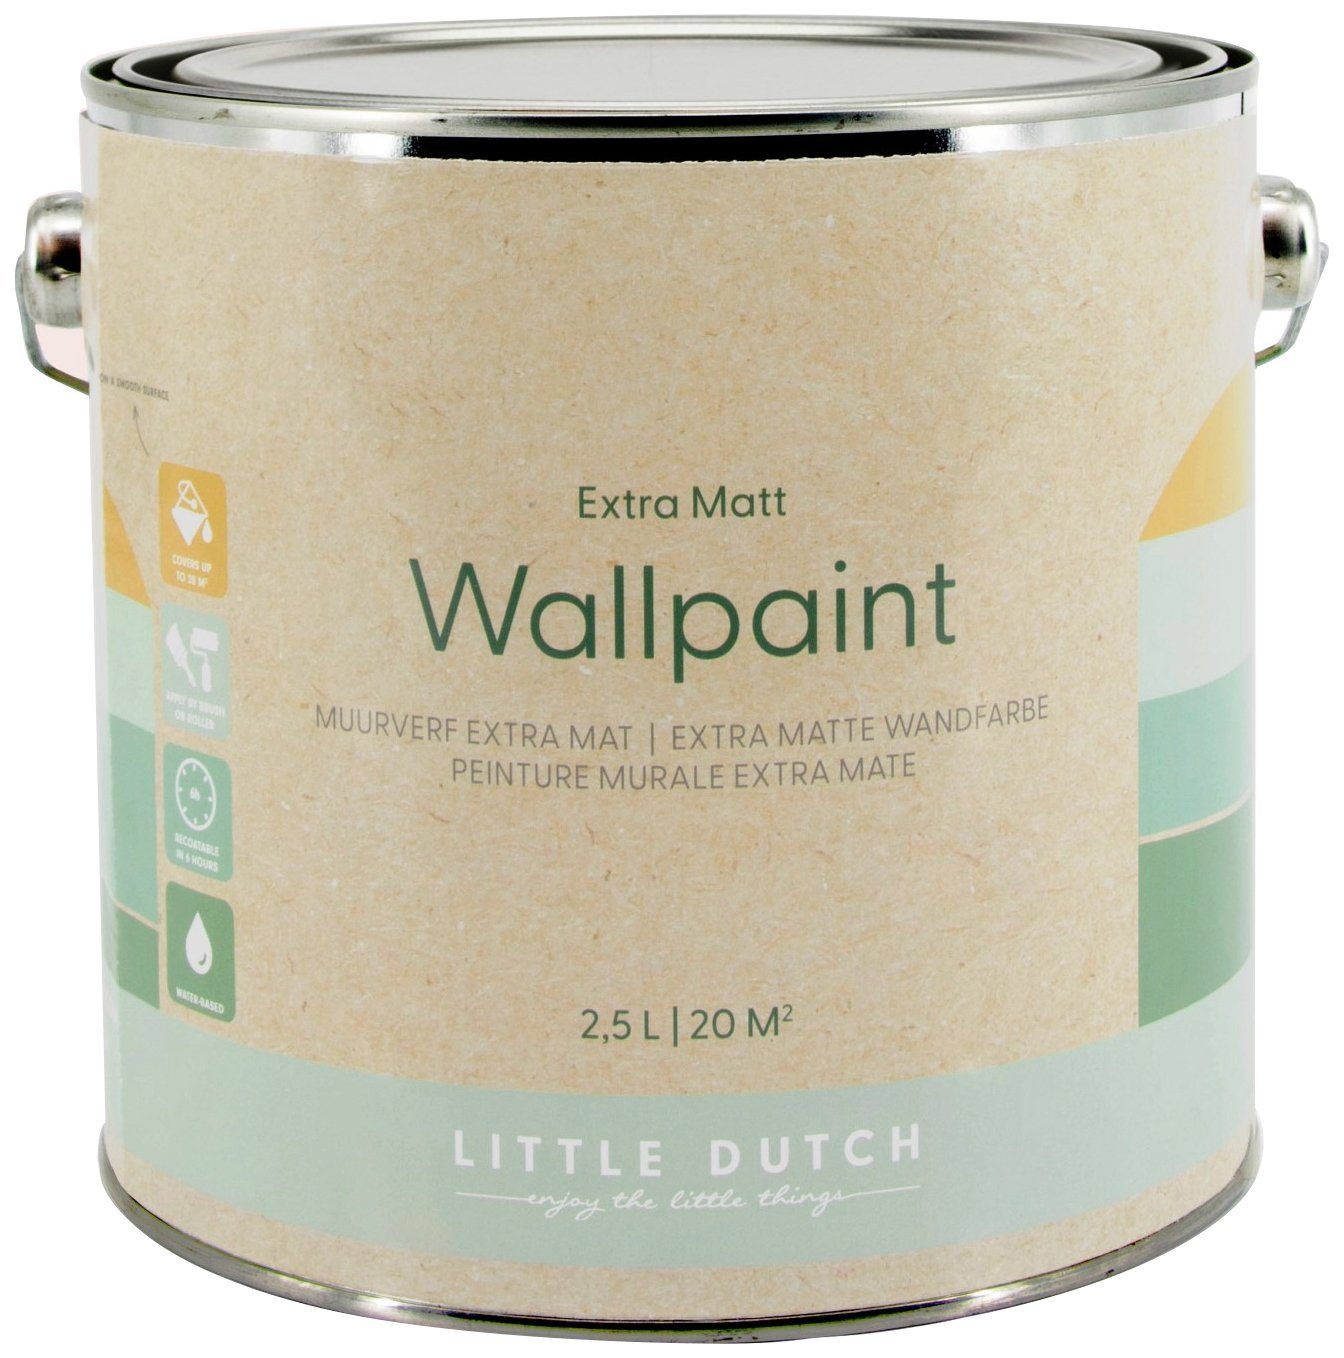 Wallpaint, DUTCH Wandfarbe LITTLE für Rosa waschbeständig, Kinderzimmer geeignet und hochdeckend extra Adventure matt,